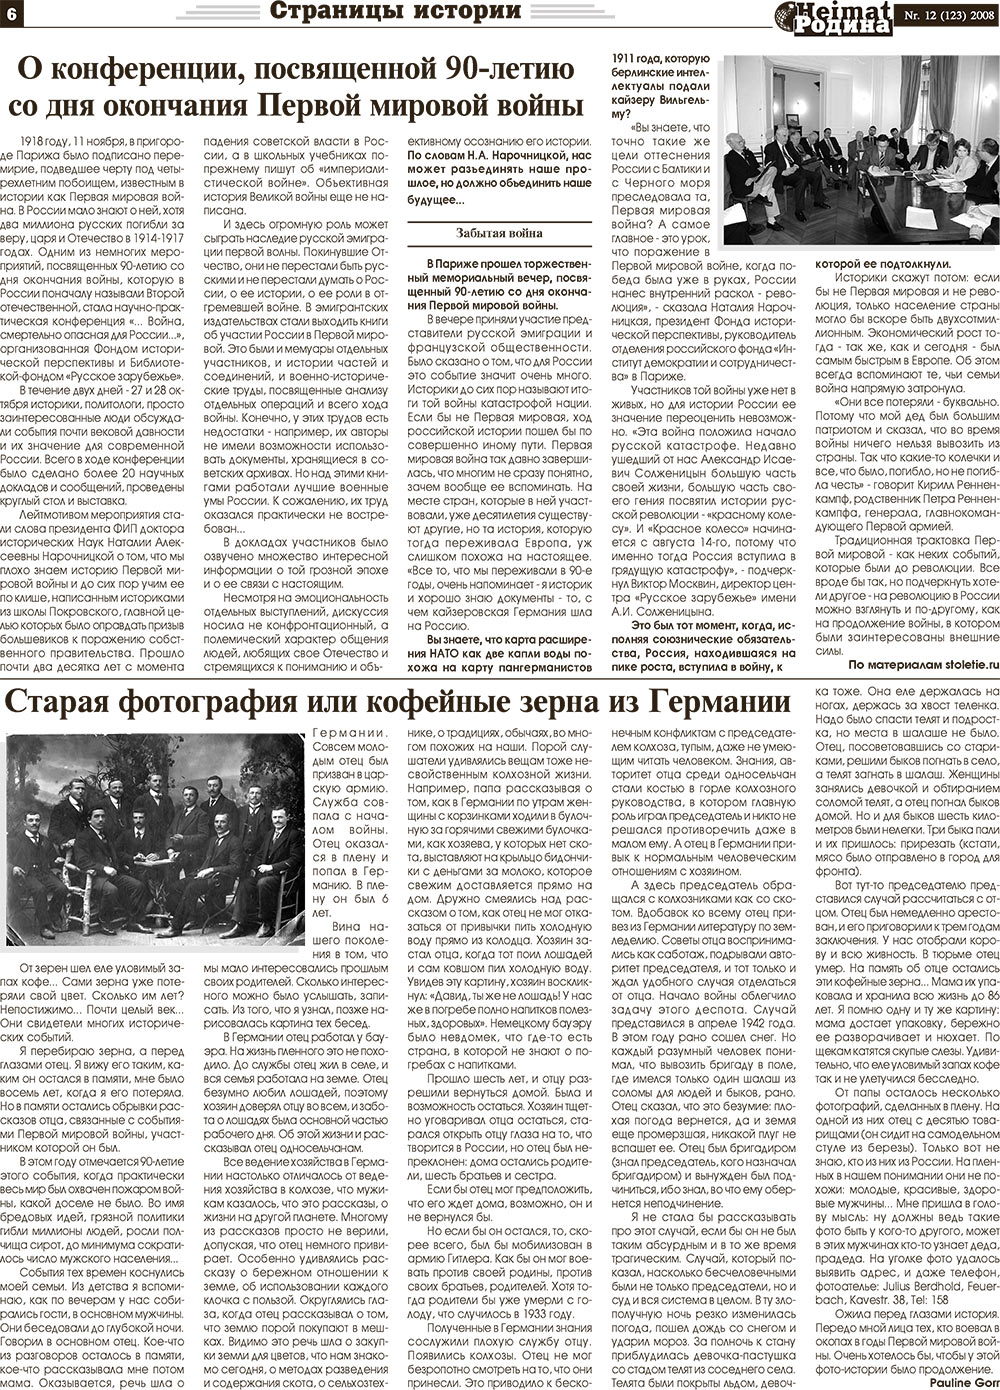 Heimat-Родина (газета). 2008 год, номер 12, стр. 6